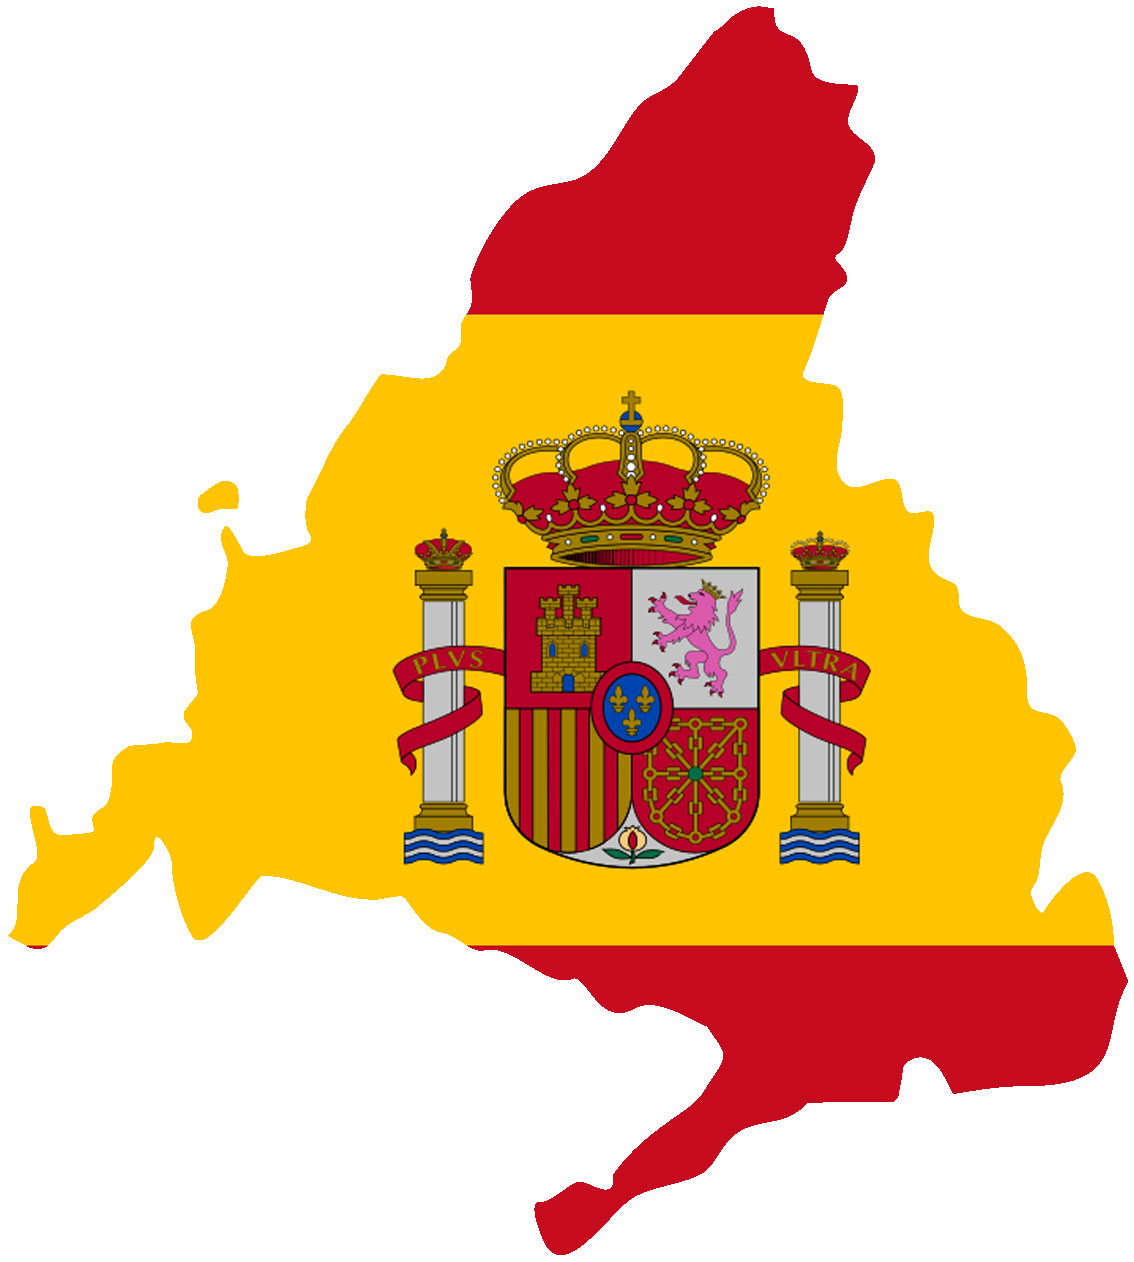 Contorno de la provincia de Madrid con una bandera de España en su interior como fondo